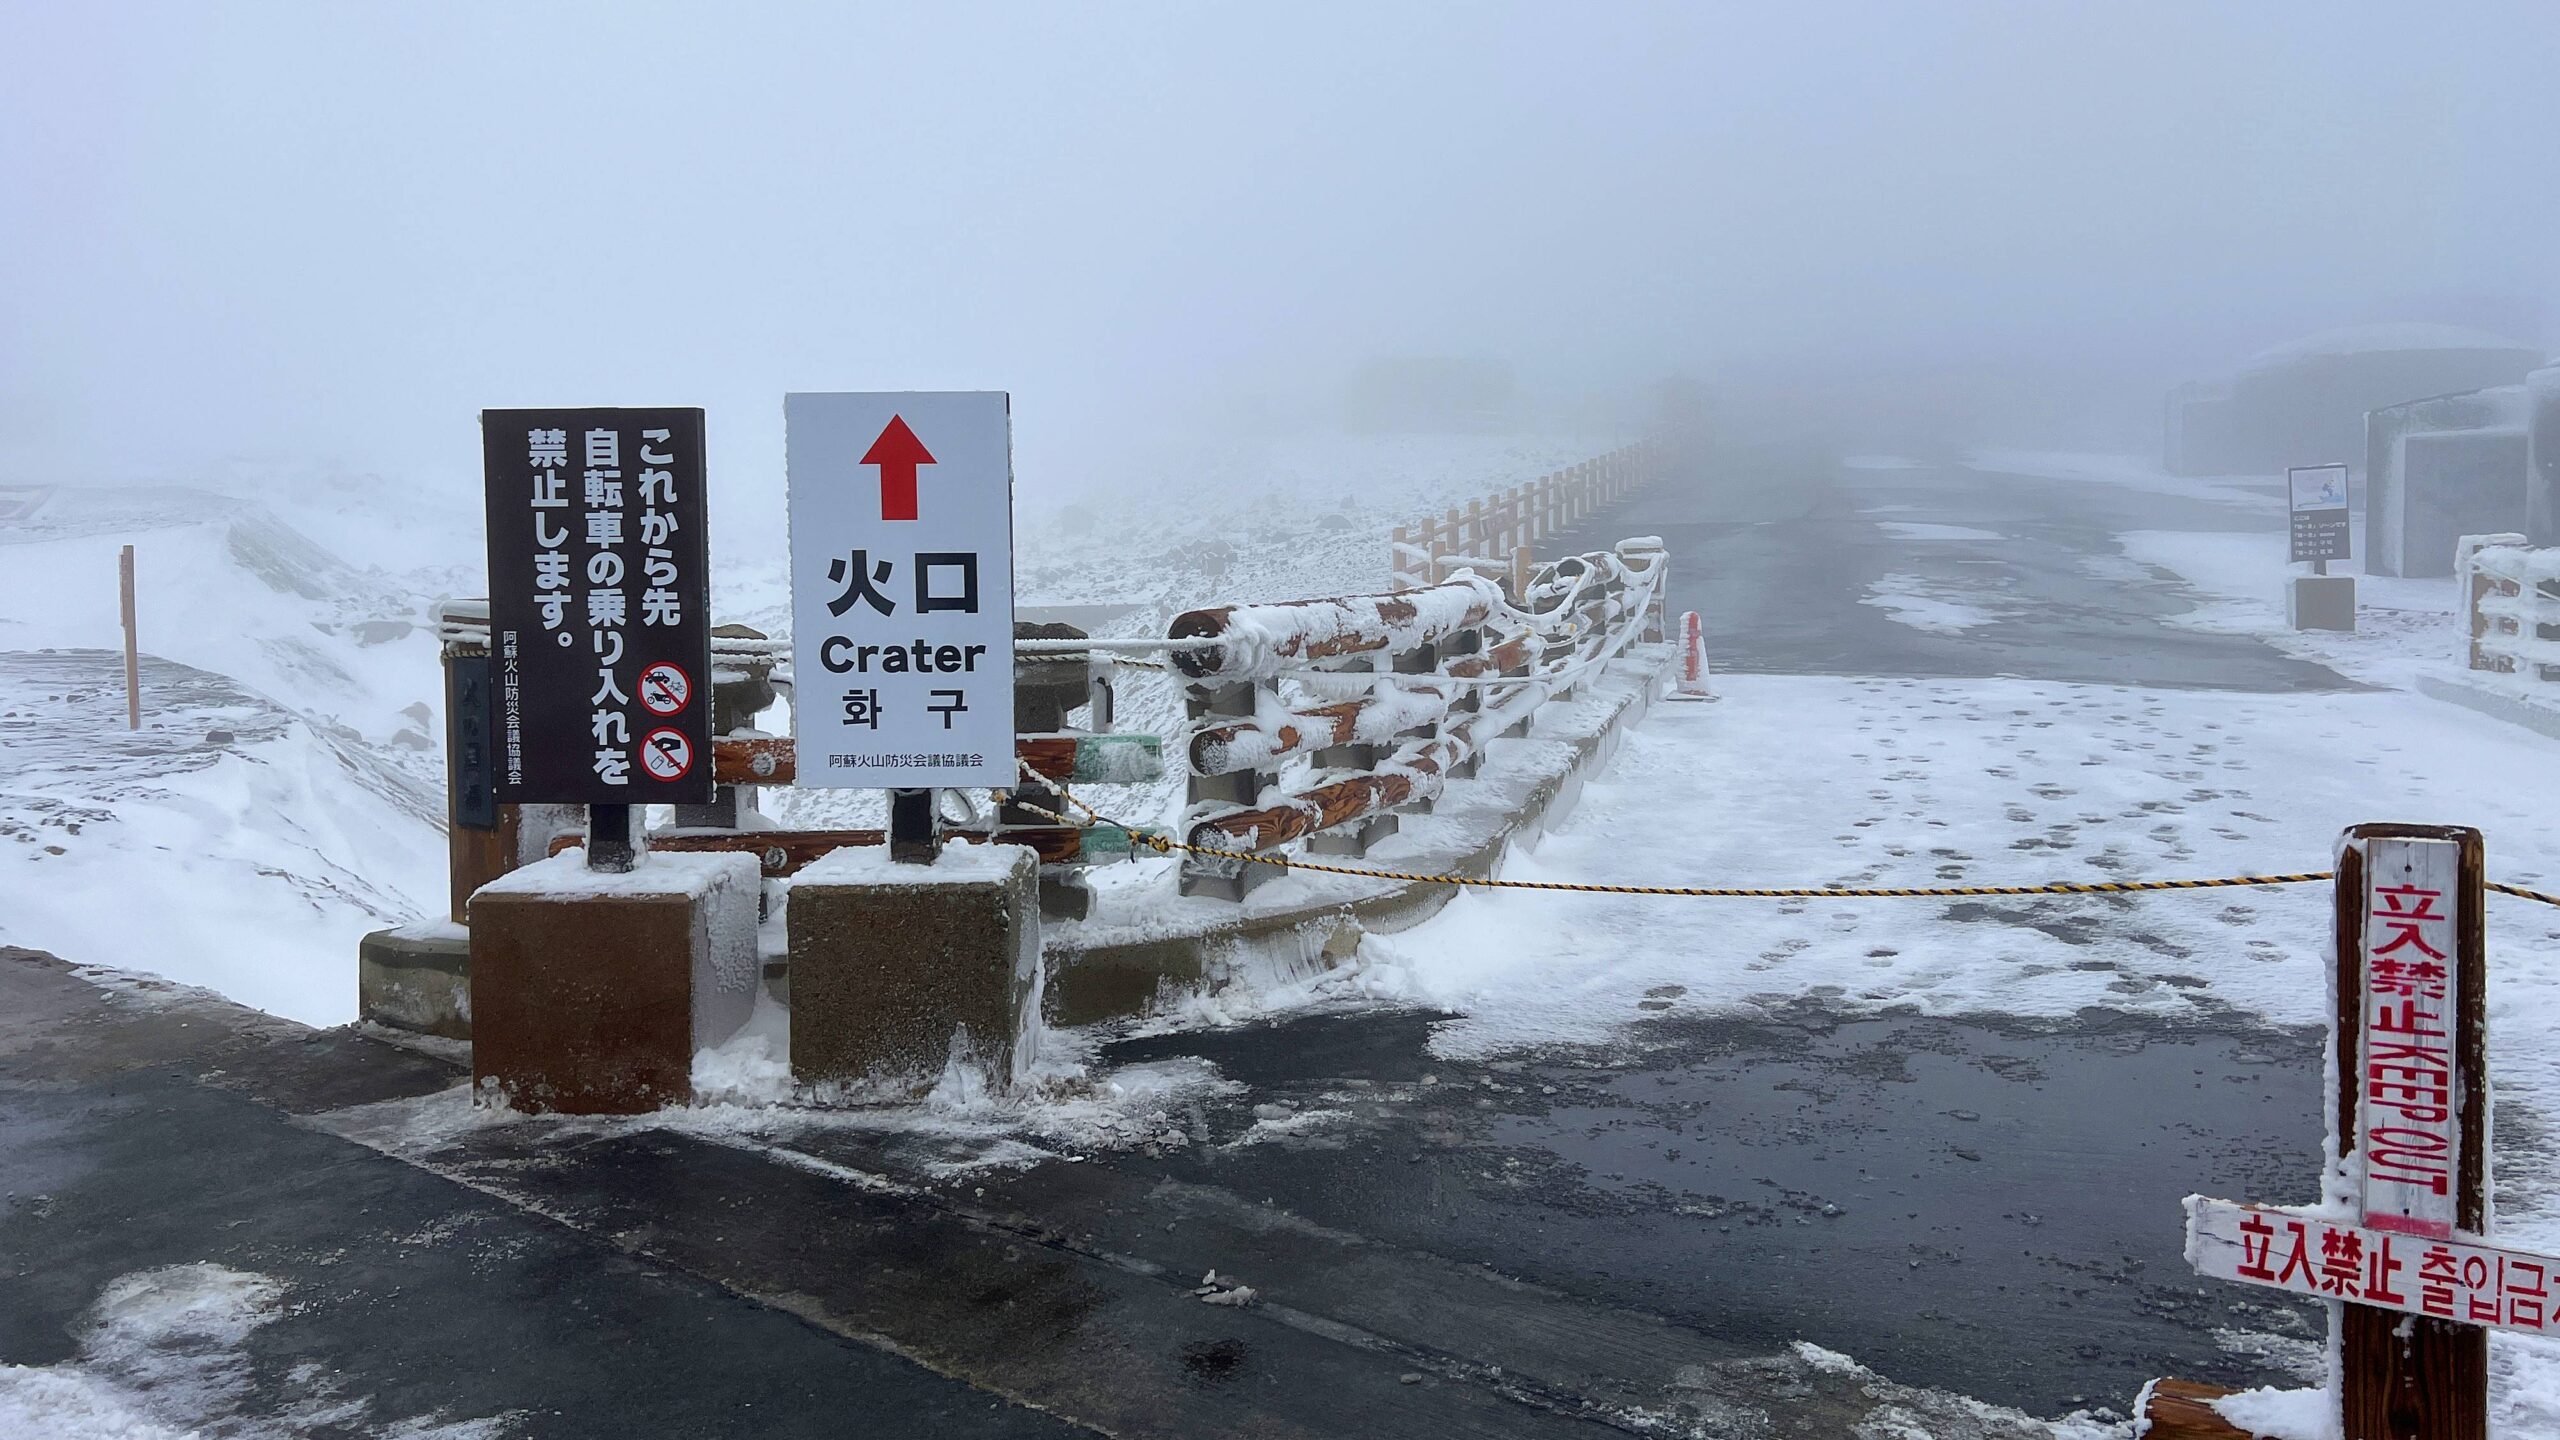 當冰雪與火山相遇，既像地獄又如天堂！九州熊本縣的冬日玩法－雪見阿蘇火山。 @。CJ夫人。